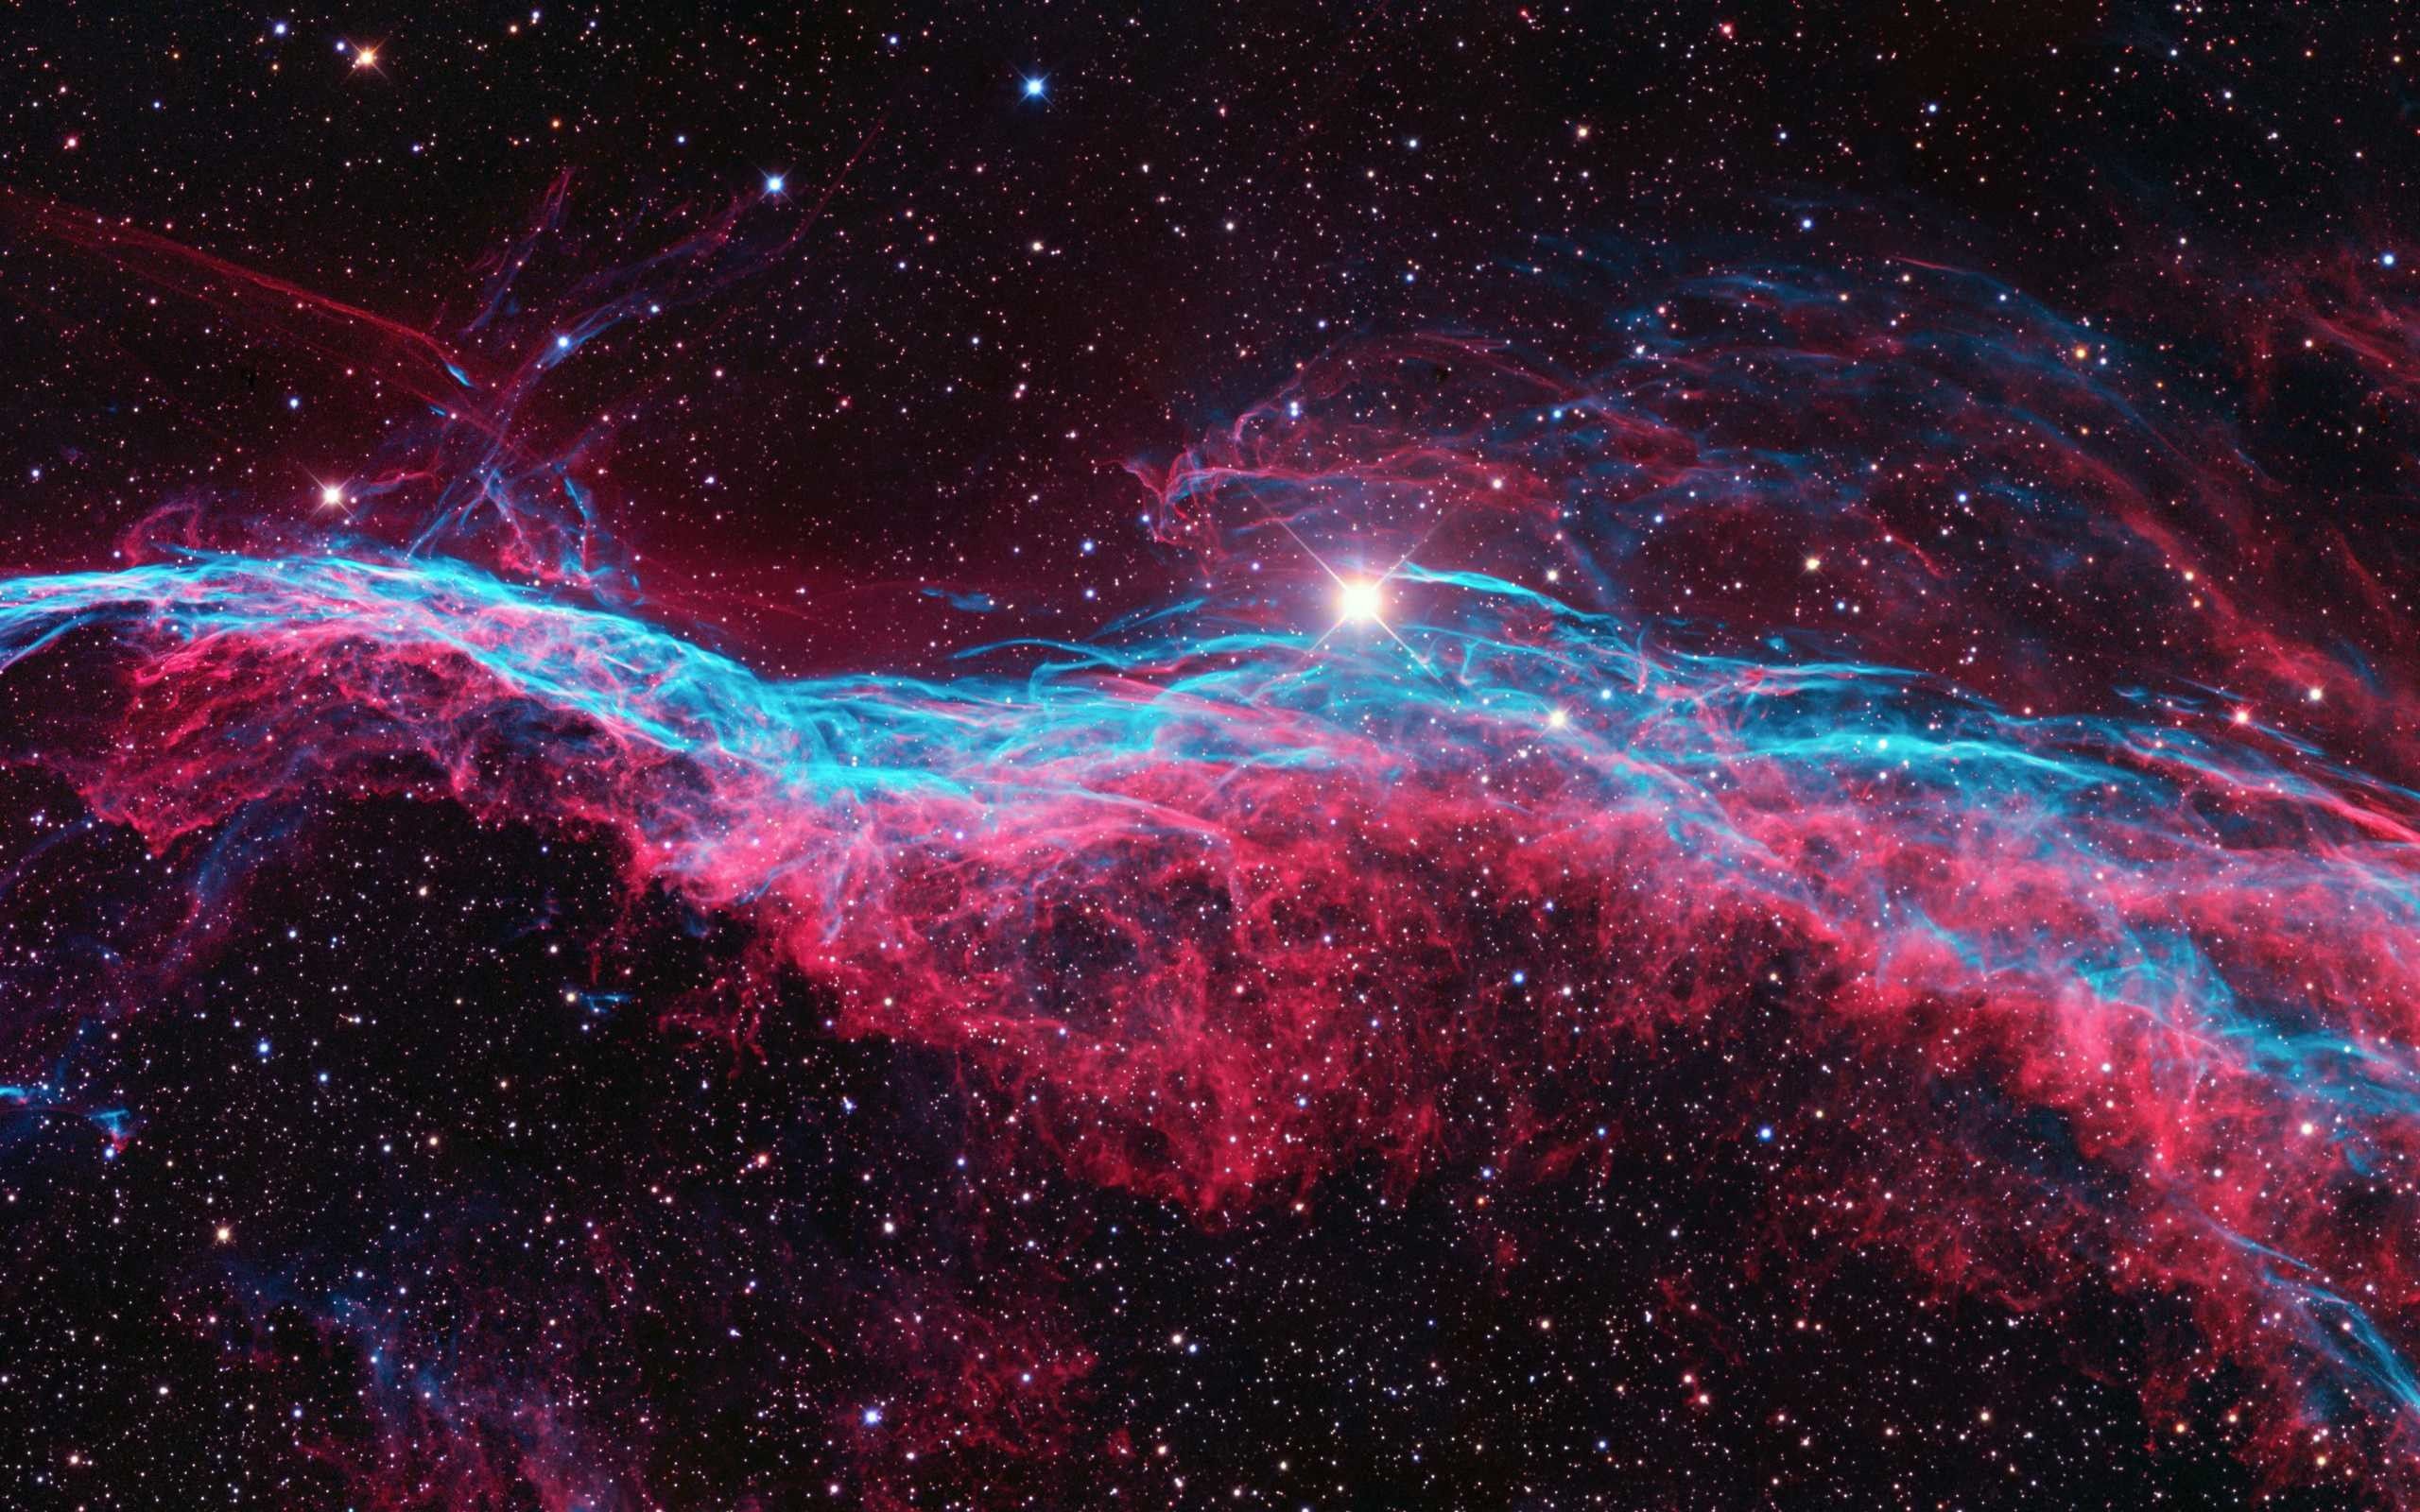 Vũ trụ luôn là một chủ đề hấp dẫn với sự bí ẩn và đẹp đẽ của nó. Nếu bạn yêu thích chủ đề này, hãy xem hình ảnh liên quan để tìm thấy những hình nền máy tính tuyệt đẹp, có sự kết hợp của hình ảnh thiên nhiên, các hành tinh và sao chổi để tạo ra không gian đầy bí ẩn và tuyệt vời.